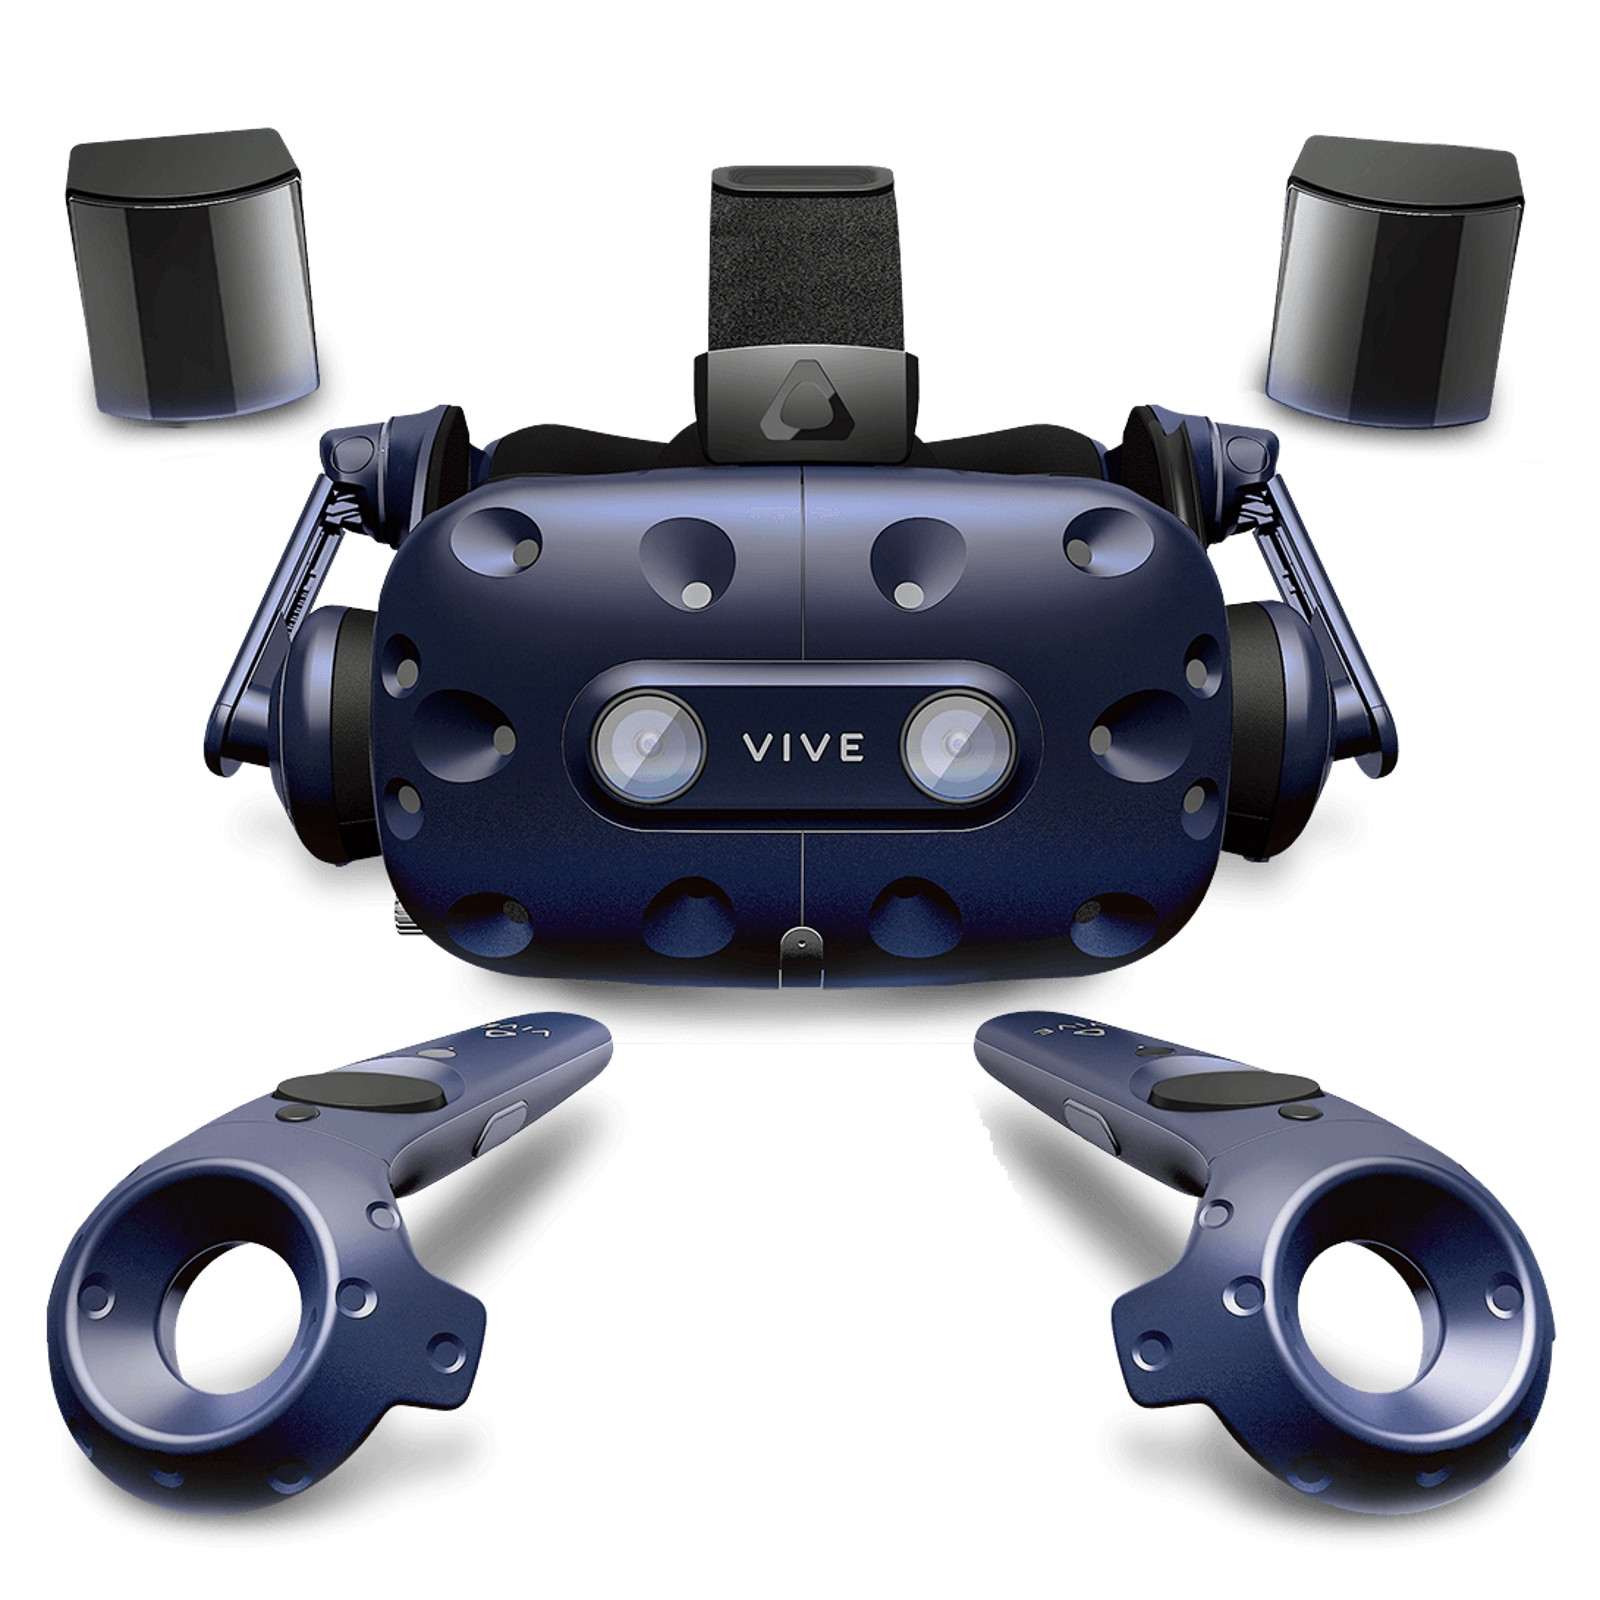 Гарнитура виртуальной реальности HTC Vive Pro стала дешевле